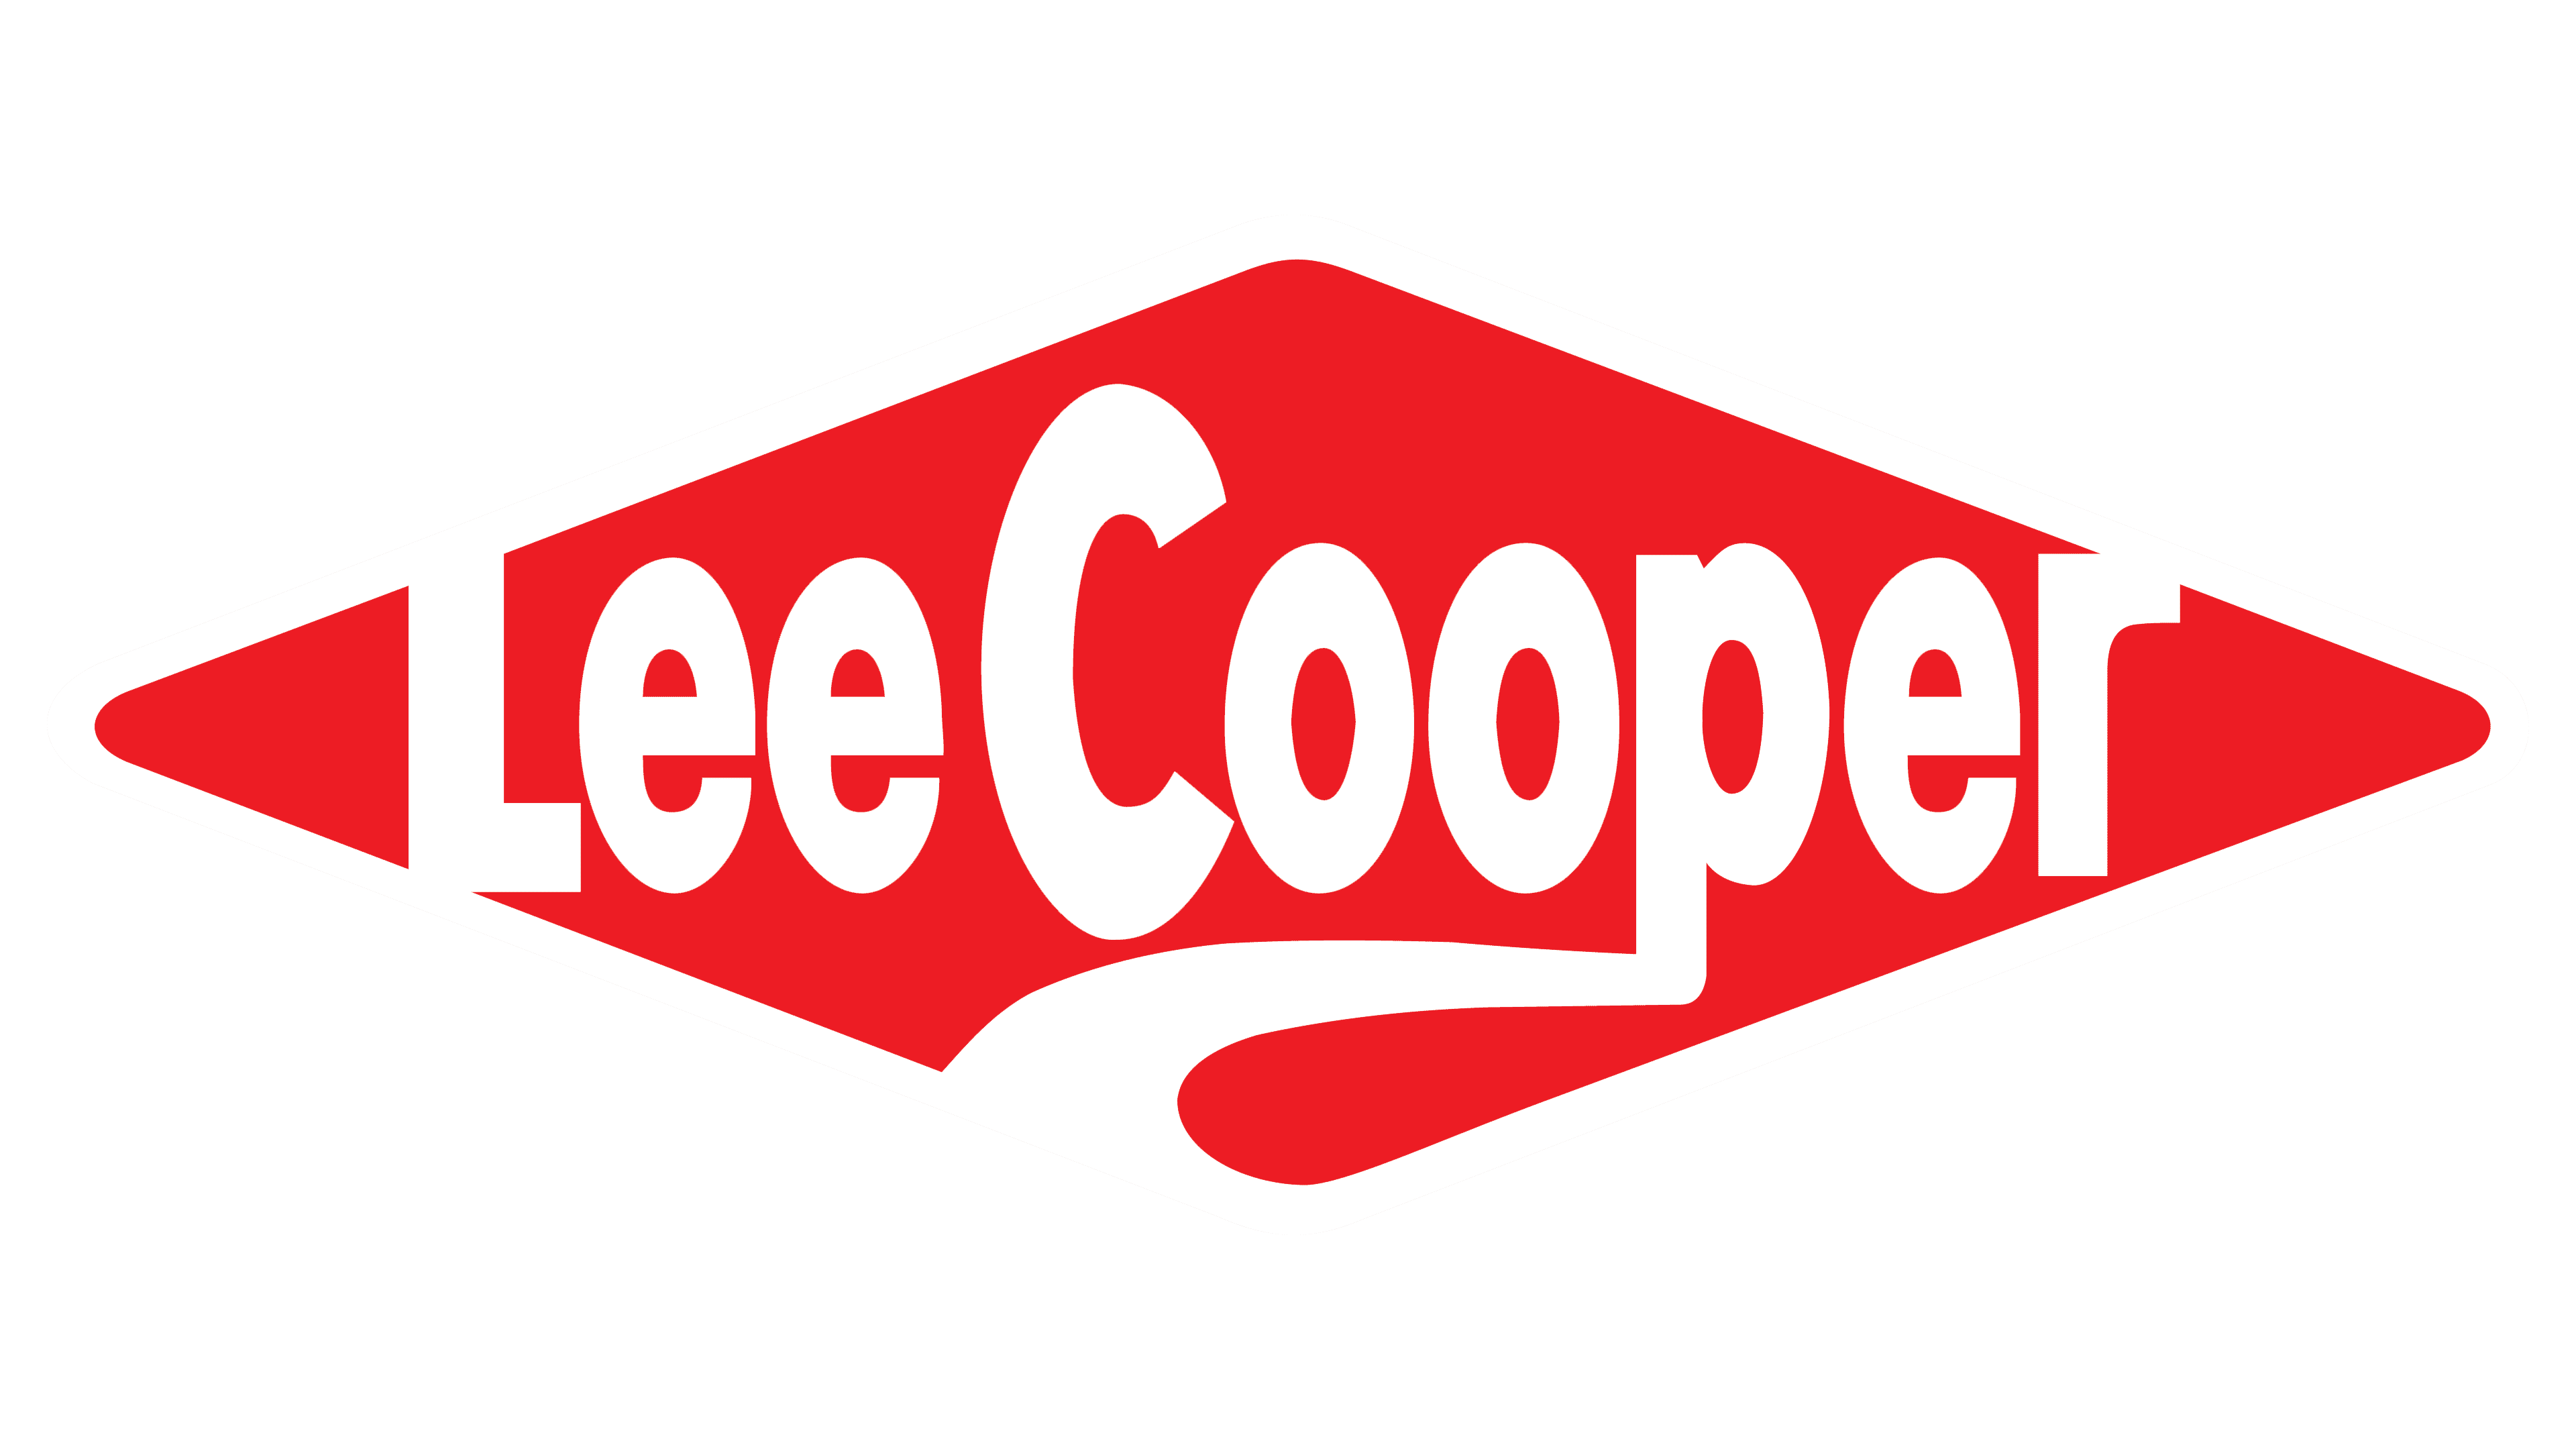 lee cooper logo